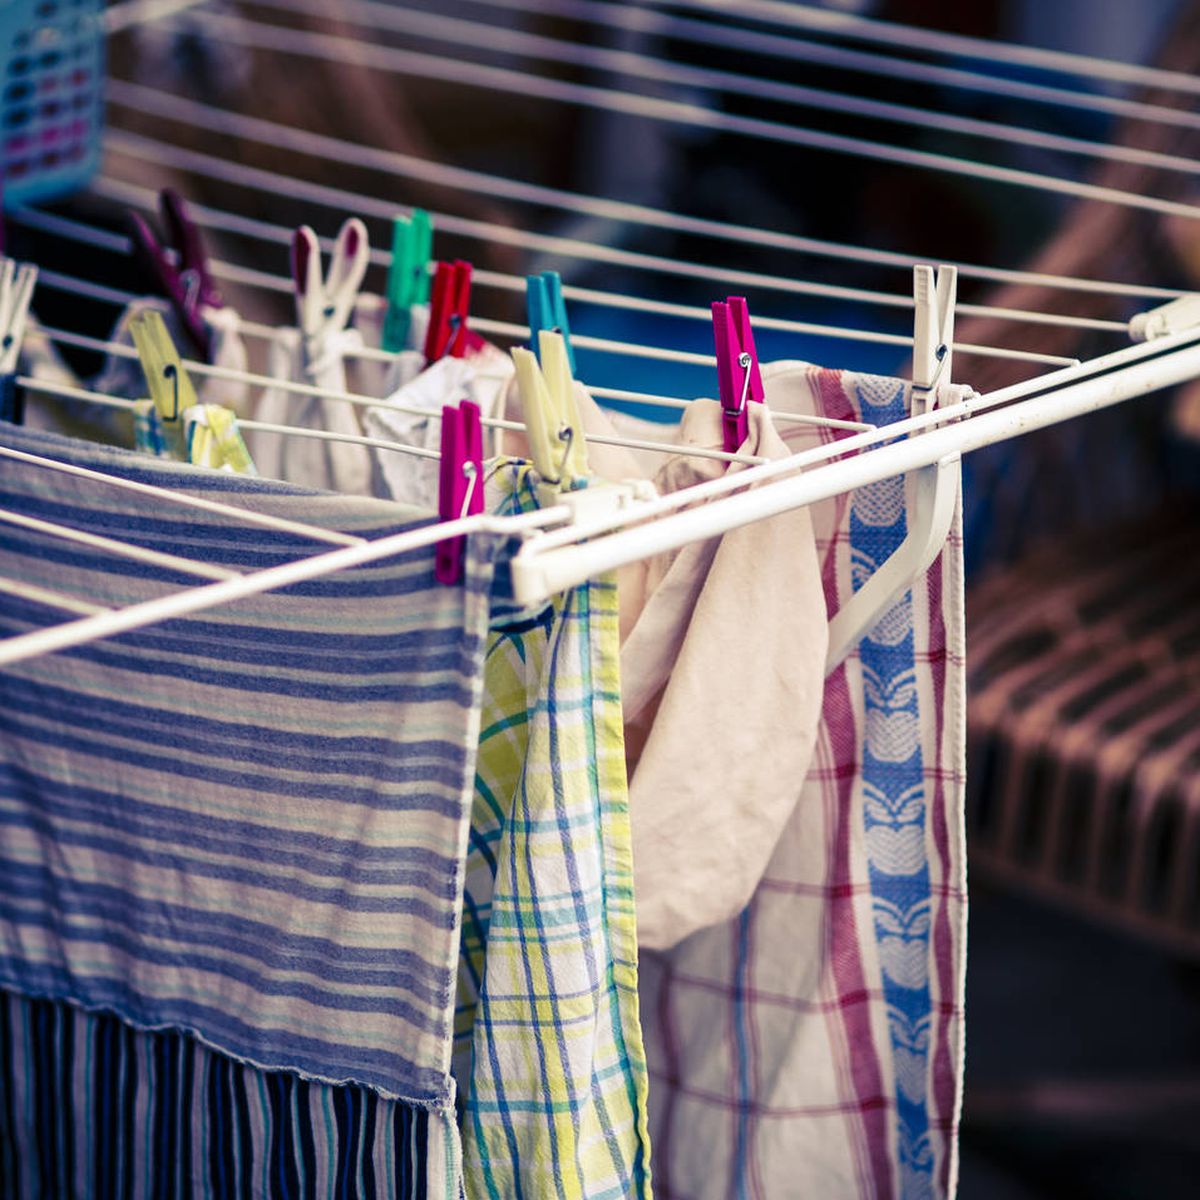 Trucos para secar tu ropa en casa sin problemas de humedad